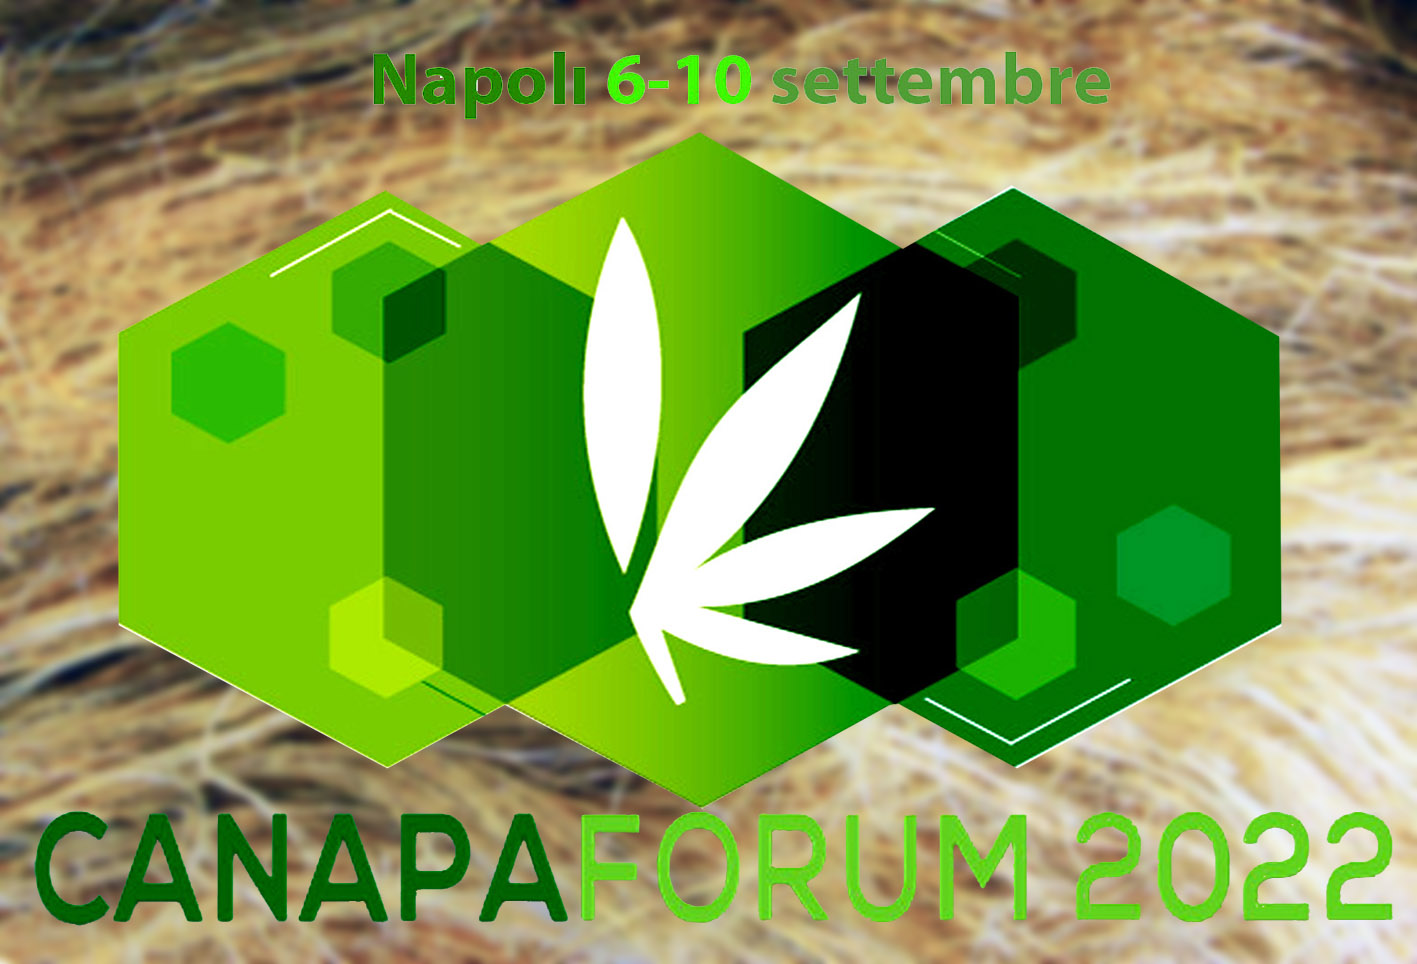 Ormai al via la seconda edizione di Canapa Forum, a Napoli dal 6 al 10 settembre